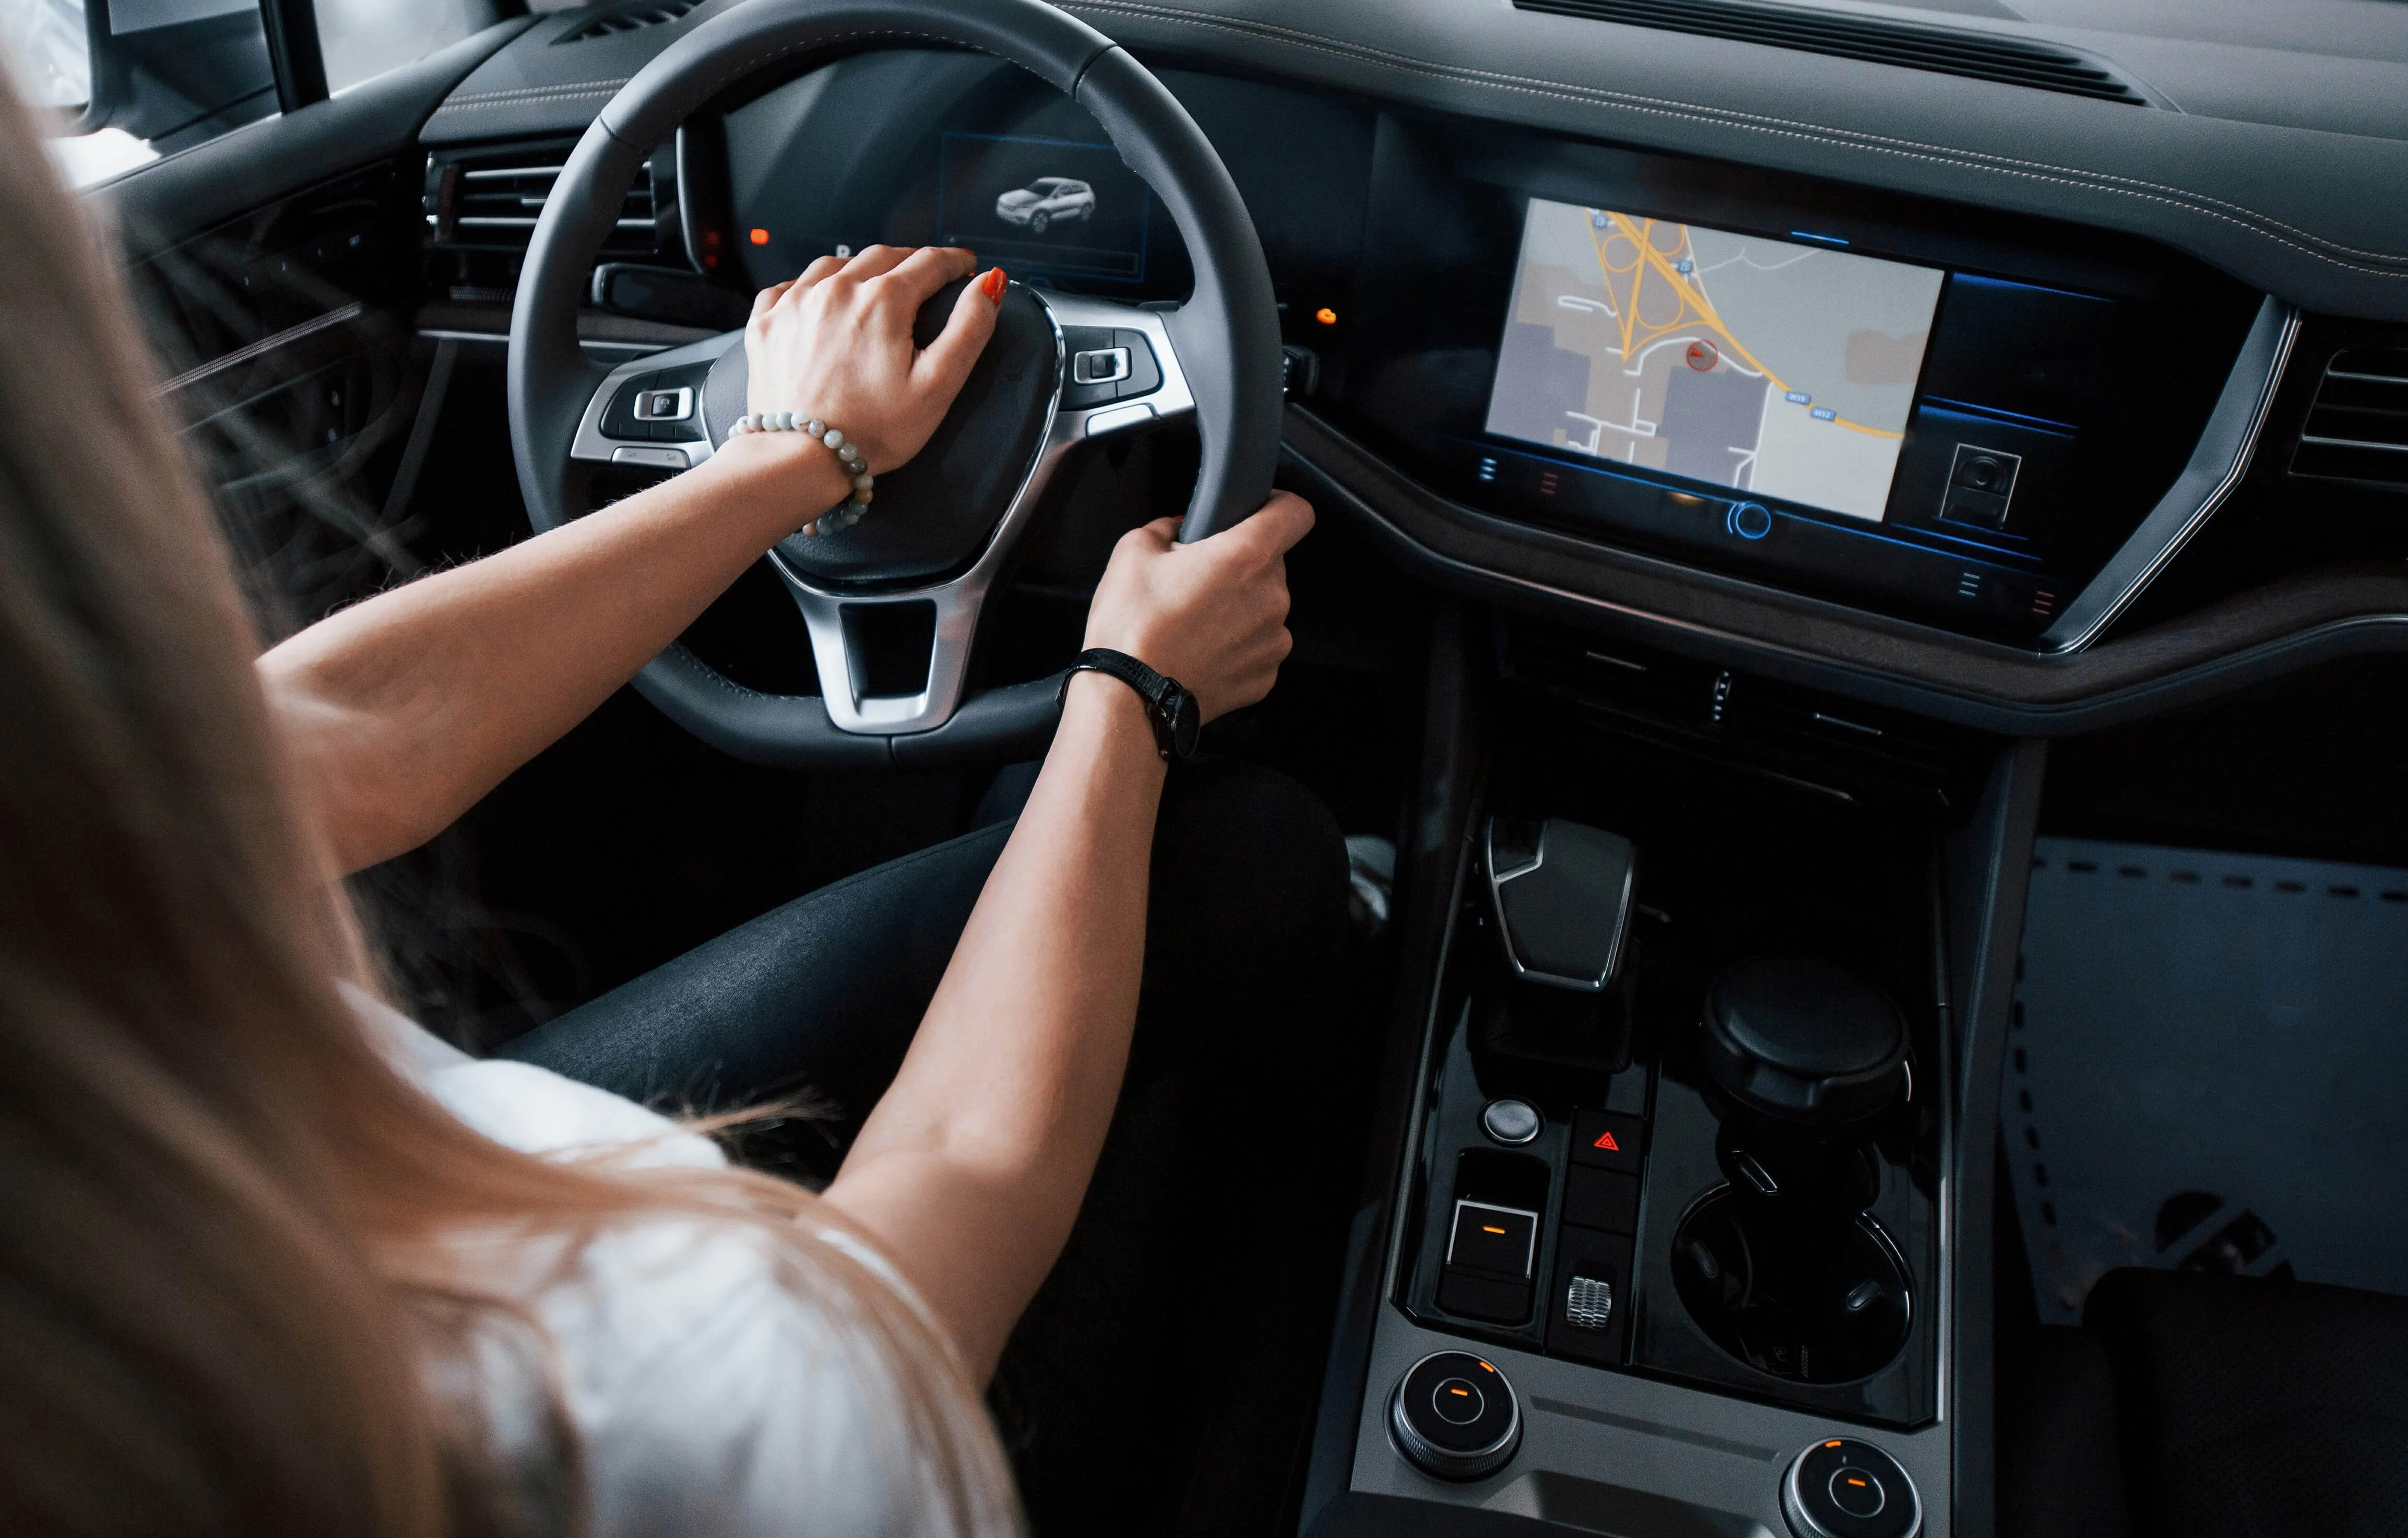 Interior de um veículo, uma mulher de camisa branca está com as duas mãos no volante enquanto dirige sem precisar trocar de marcha, representando a eficiência do conversor de torque.